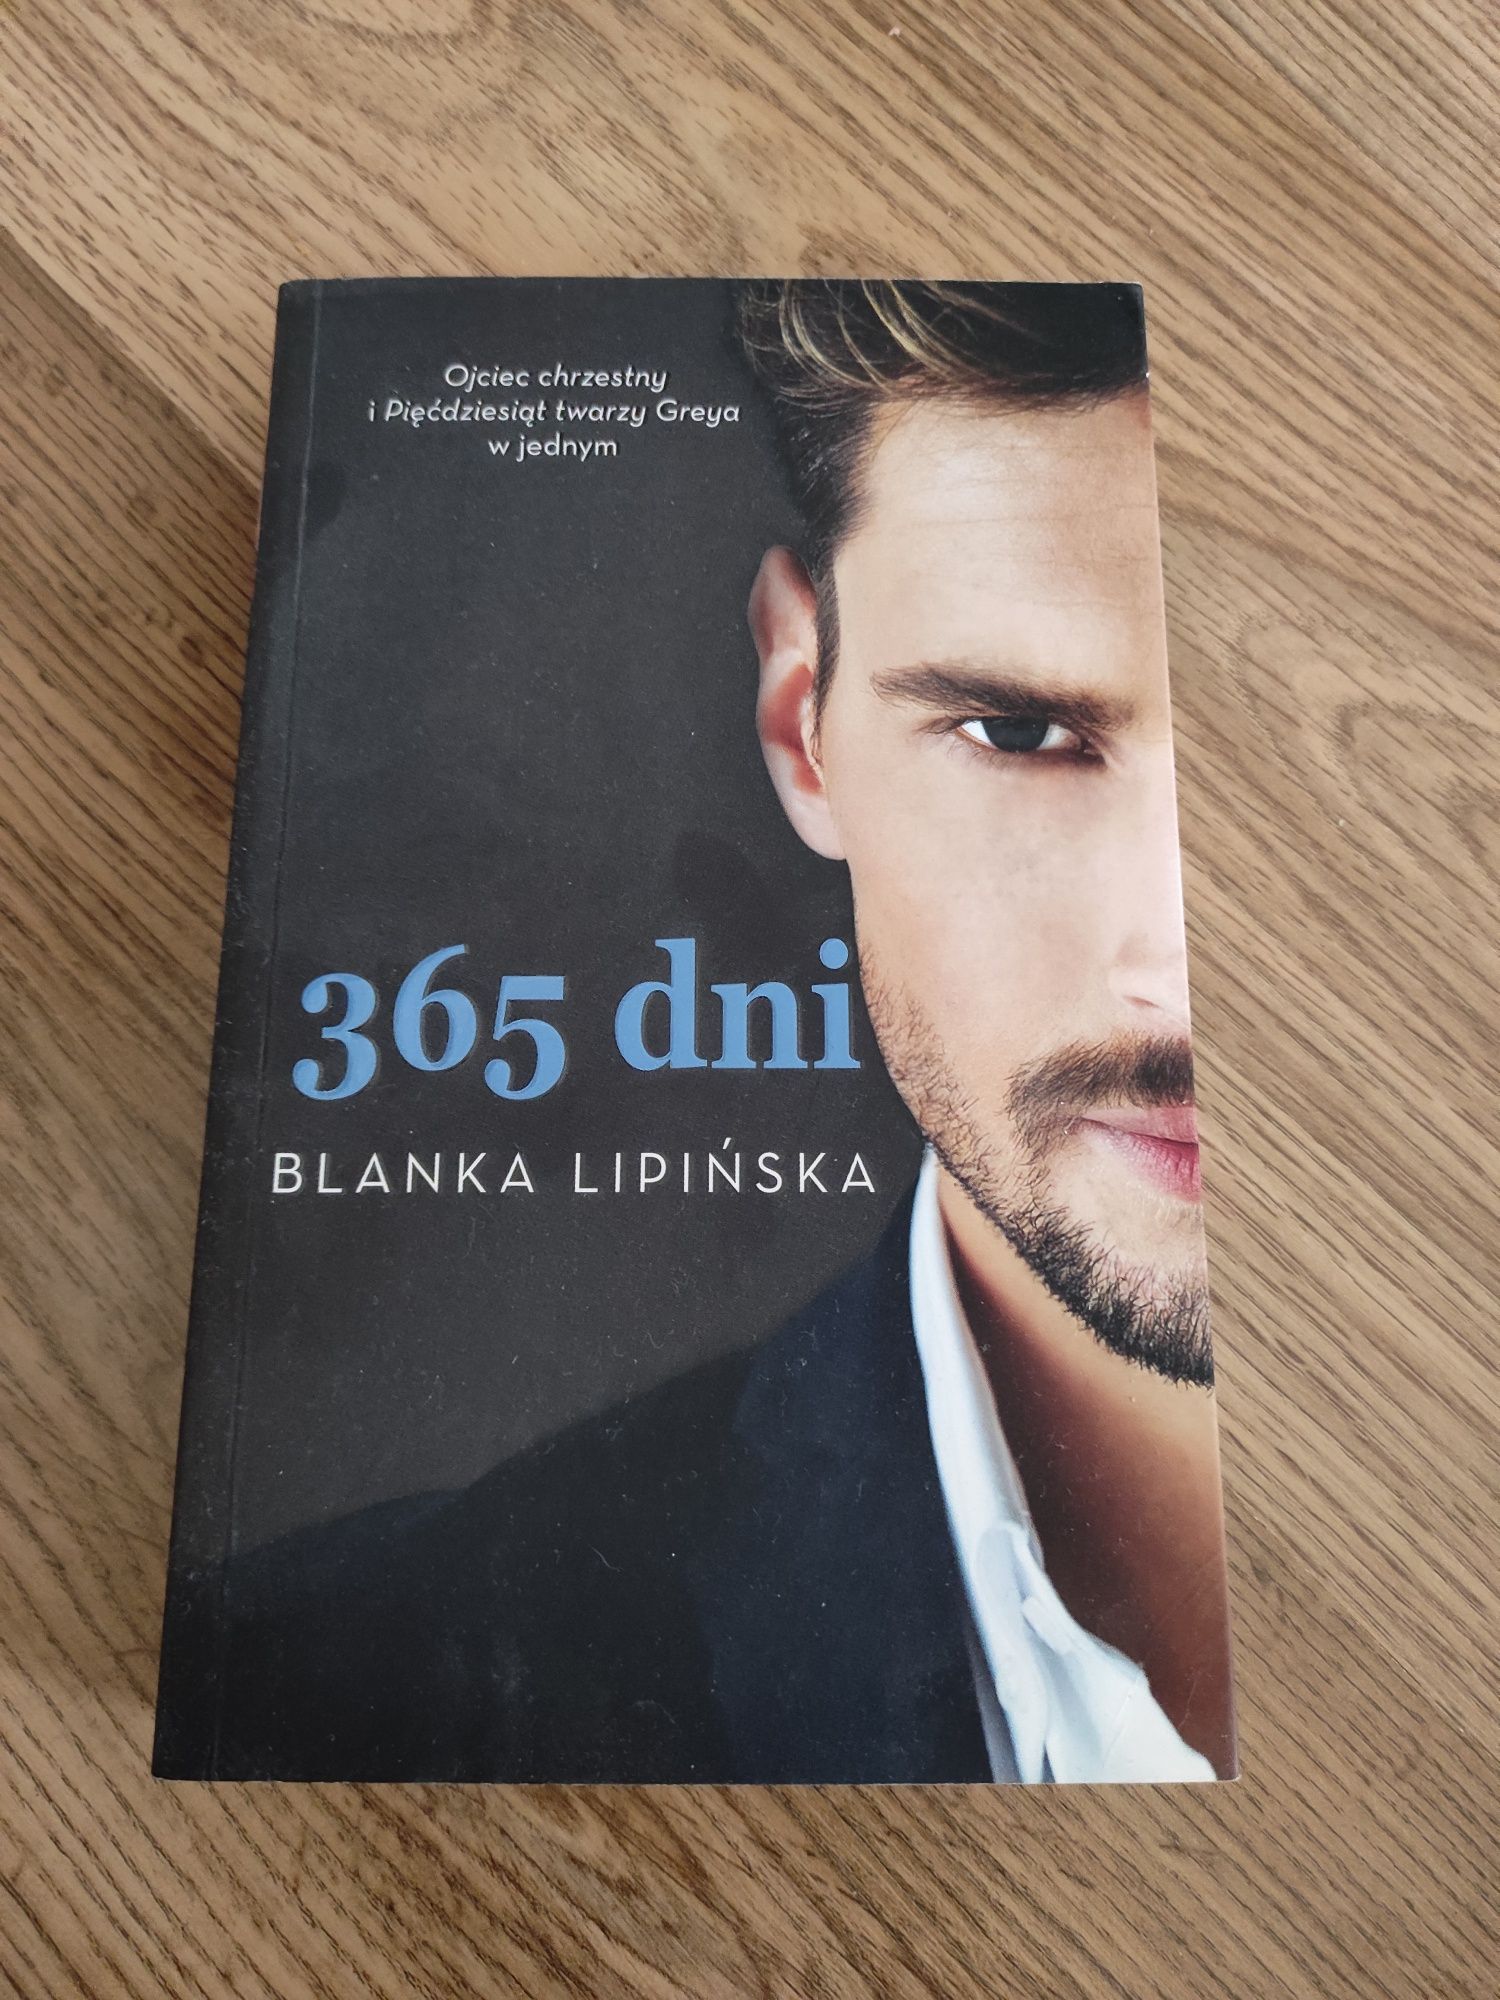 Blanka Lipińska "365 dni"